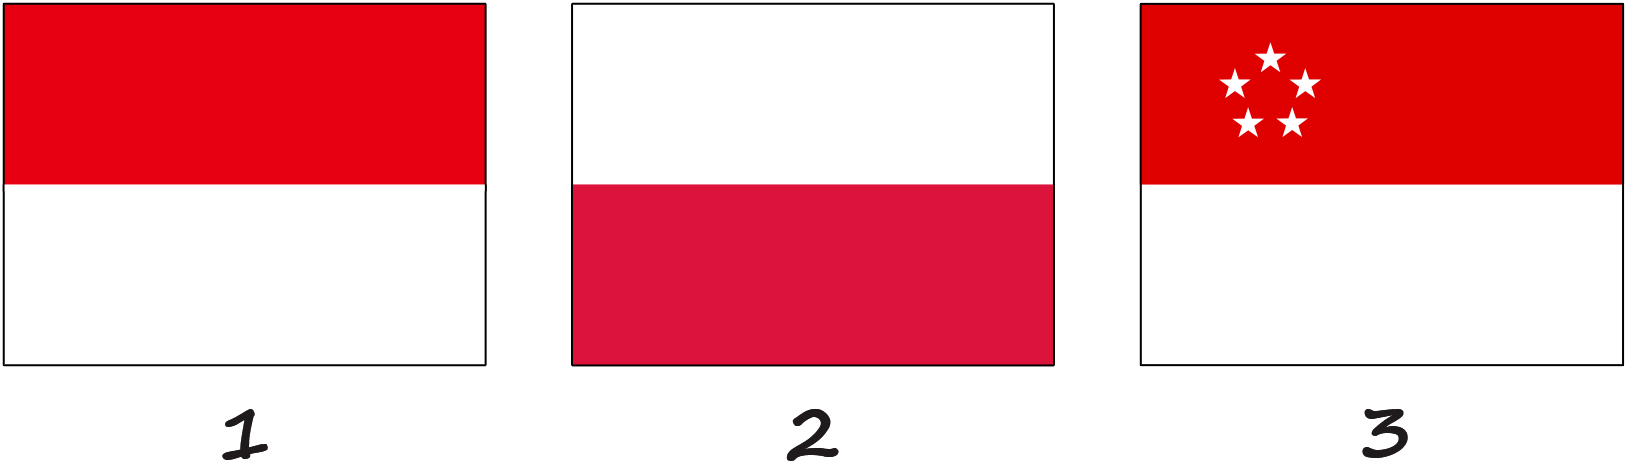 Drapeaux similaires au drapeau de Monaco